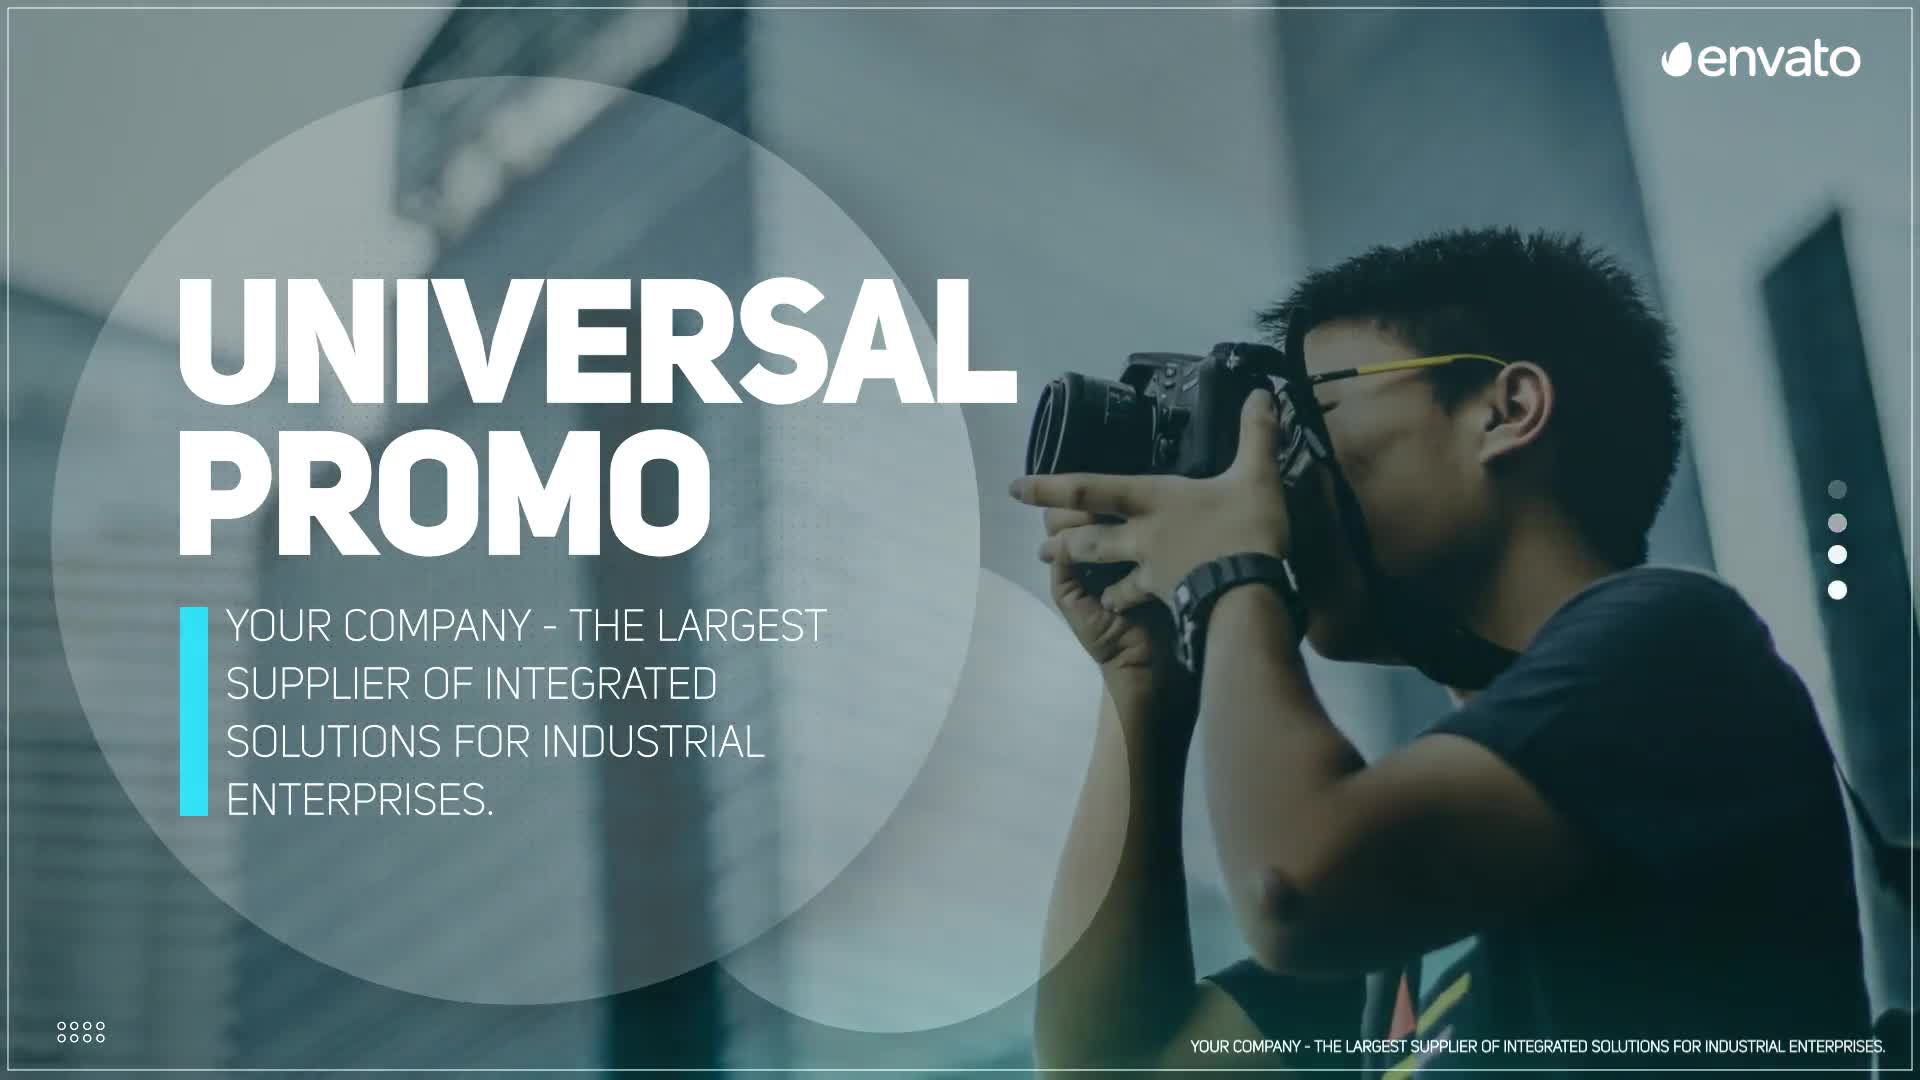 Universal Promo For Premiere Pro Videohive 32626162 Premiere Pro Image 1